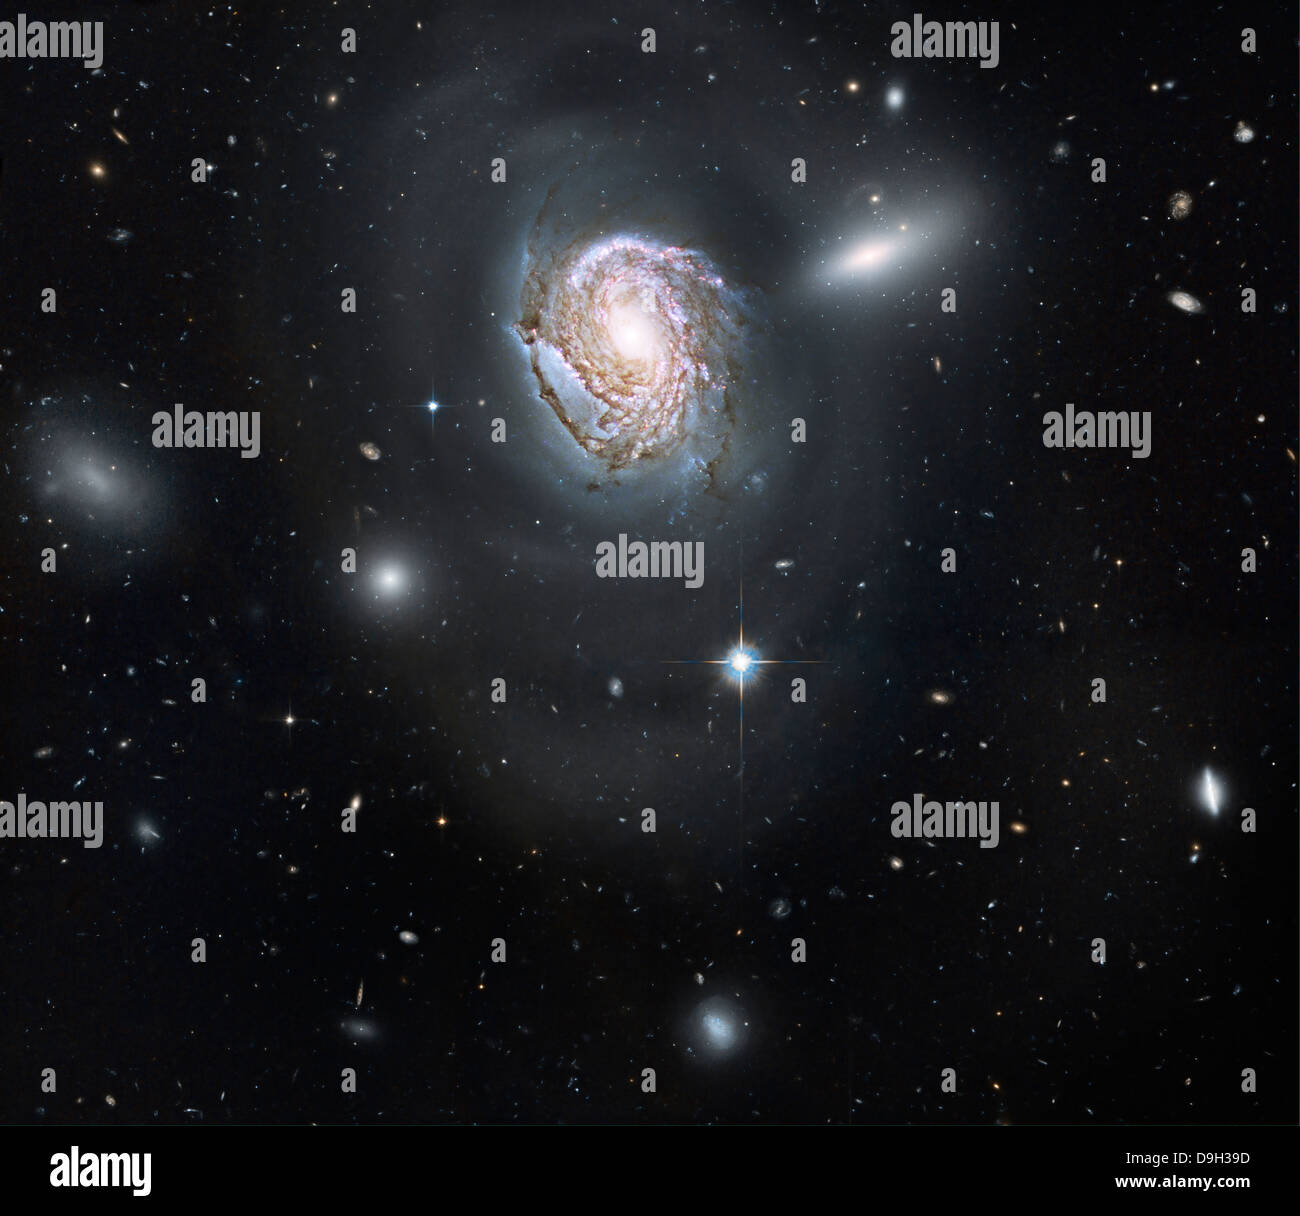 Galaxia espiral NGC 4911 ubicada dentro del grupo de galaxias de coma. Foto de stock